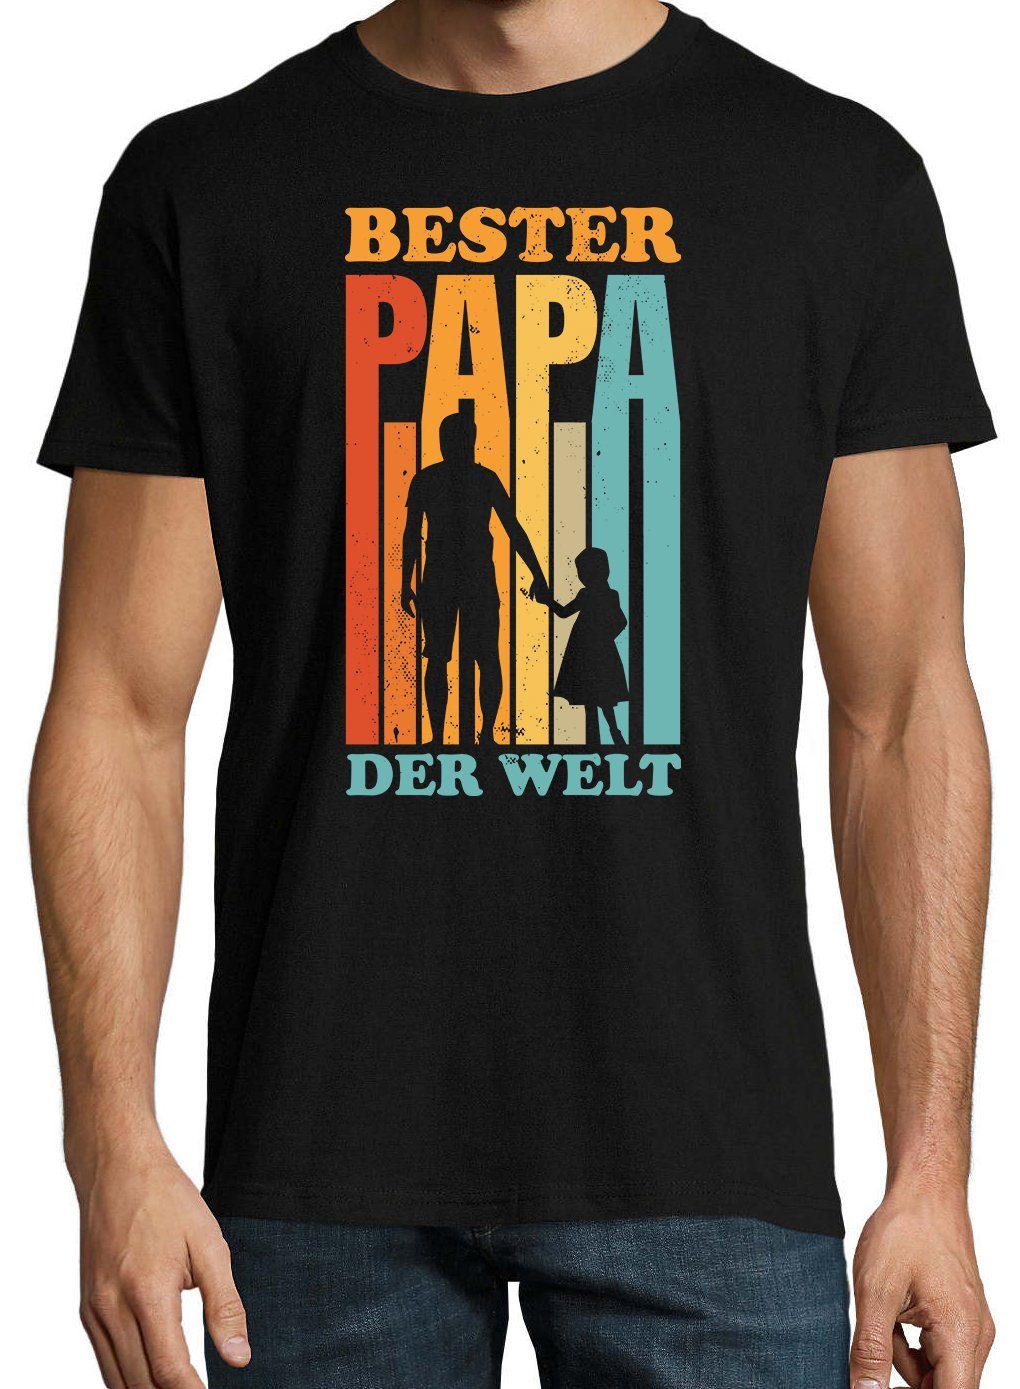 Designz T-Shirt mit Spruch der Youth Schwarz Print Herren Welt" "Bester T-Shirt Papa